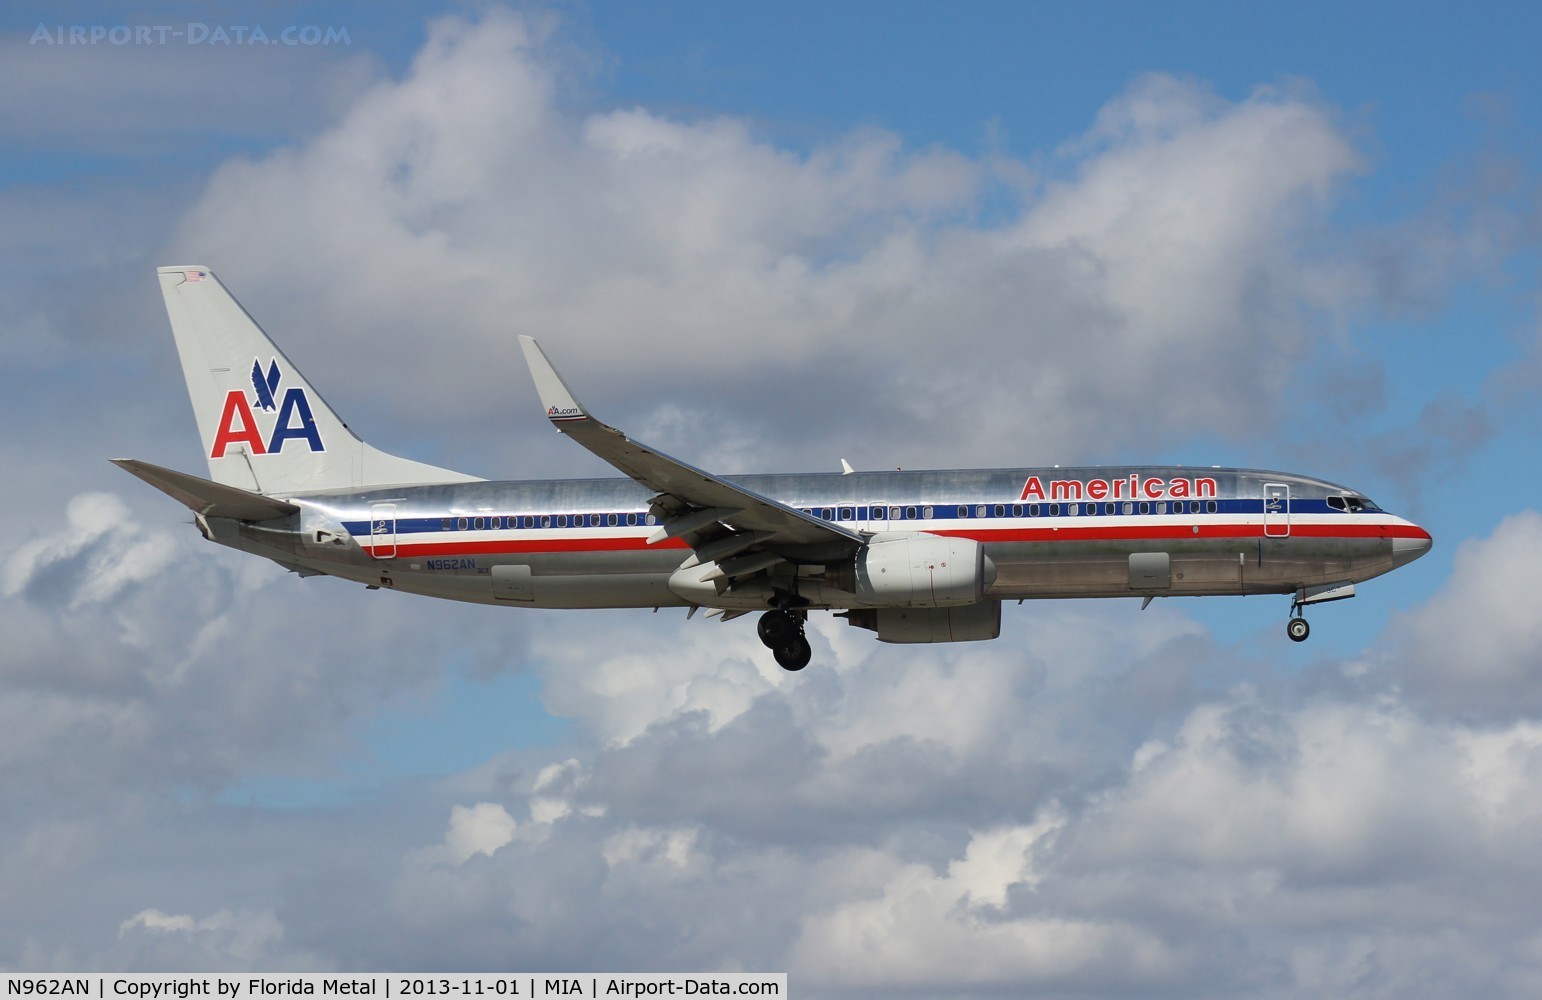 N962AN, 2001 Boeing 737-823 C/N 30858, American 737-800